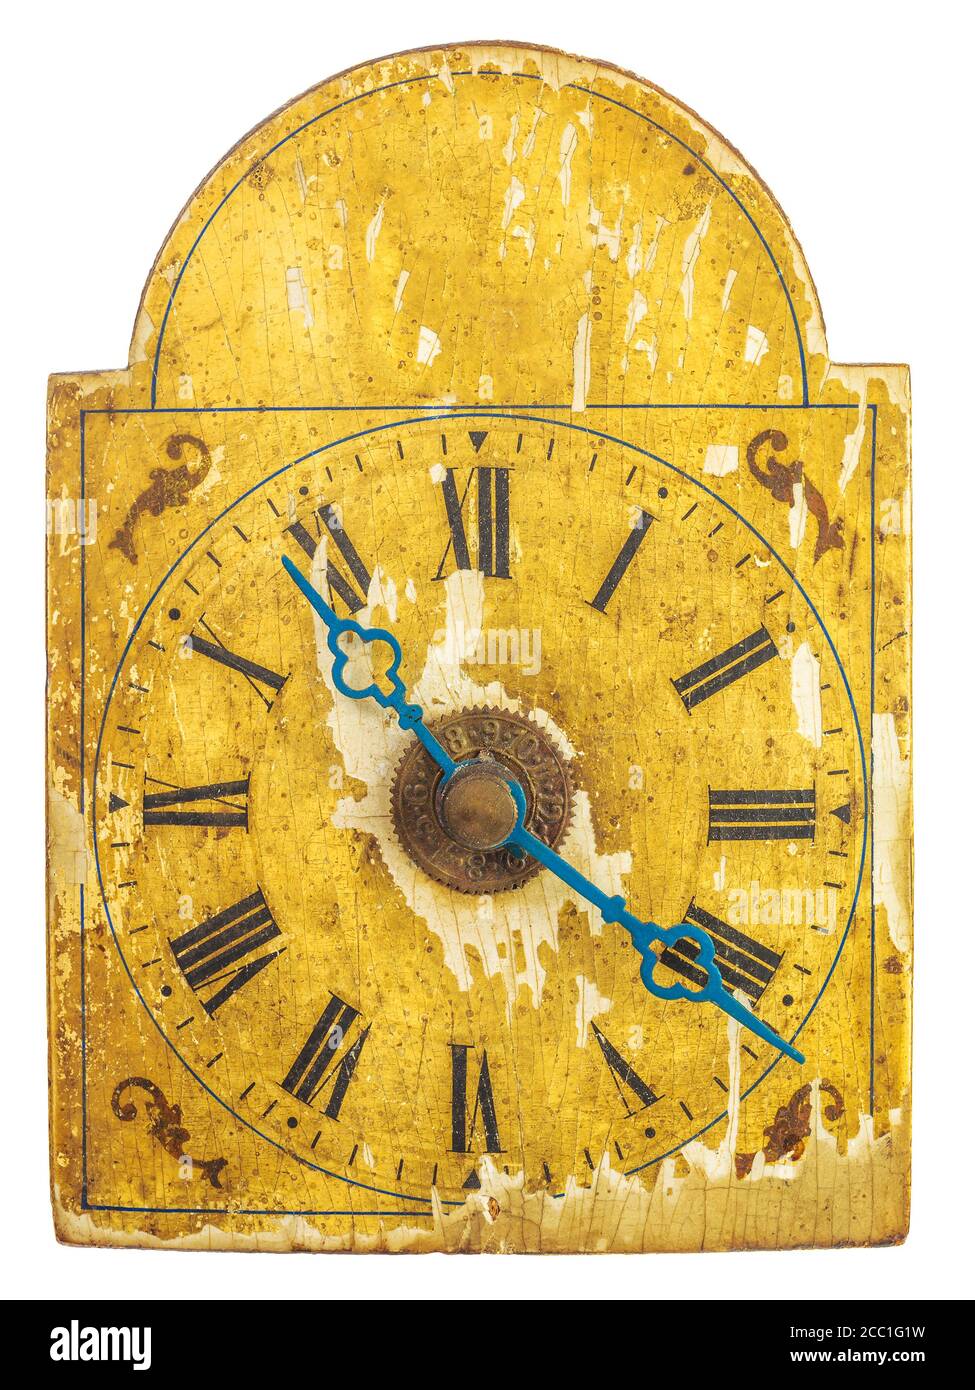 Horloge ornementale authentique du XVIIe siècle avec heure et minute bleues mains isolées sur fond blanc Banque D'Images